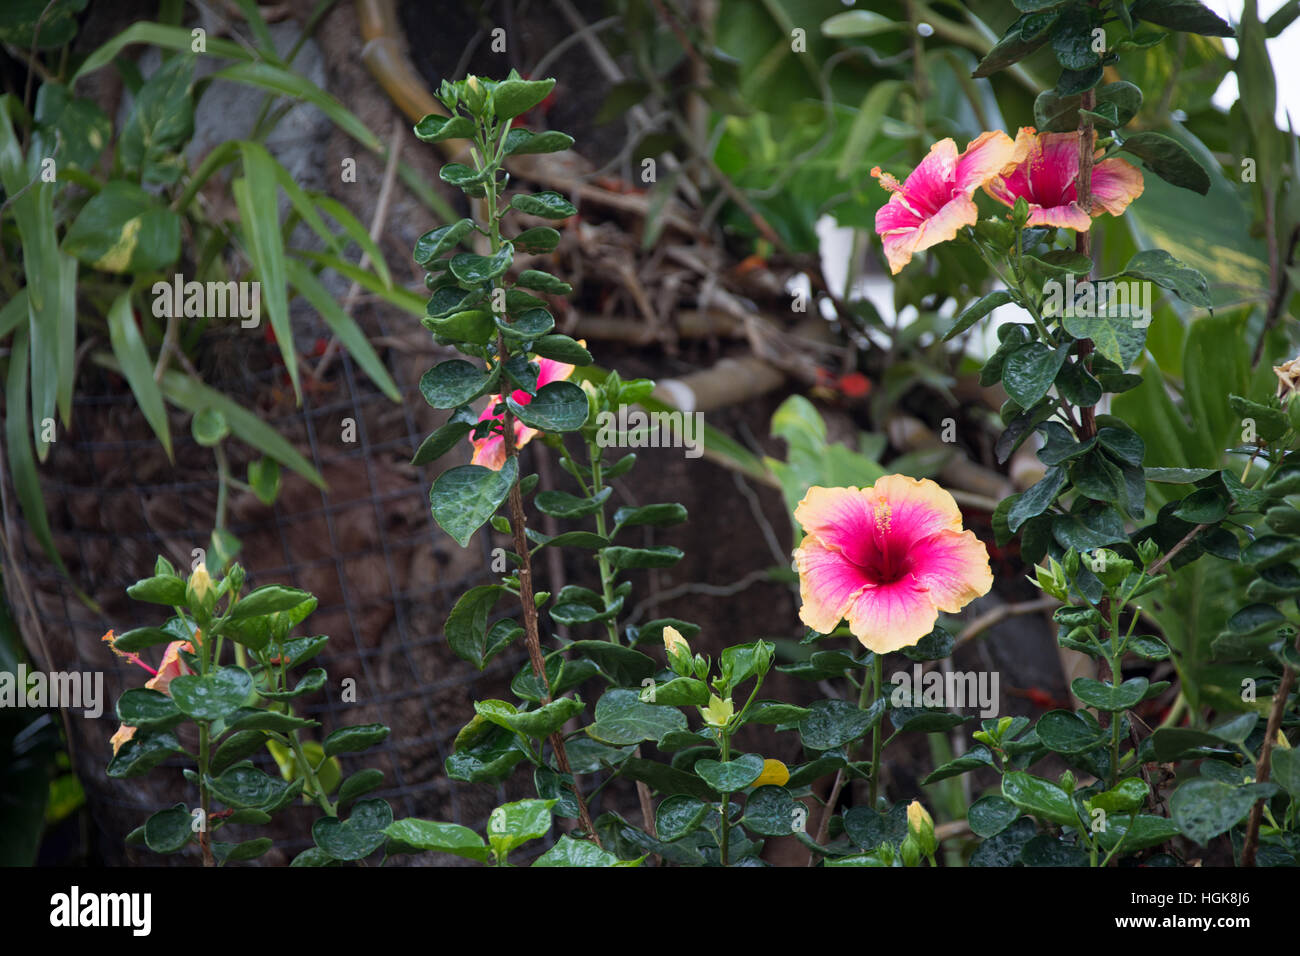 Sir Seewoosagur Ramgoolam Botanic Garden, Pamplemousses, Mauritius Stock Photo